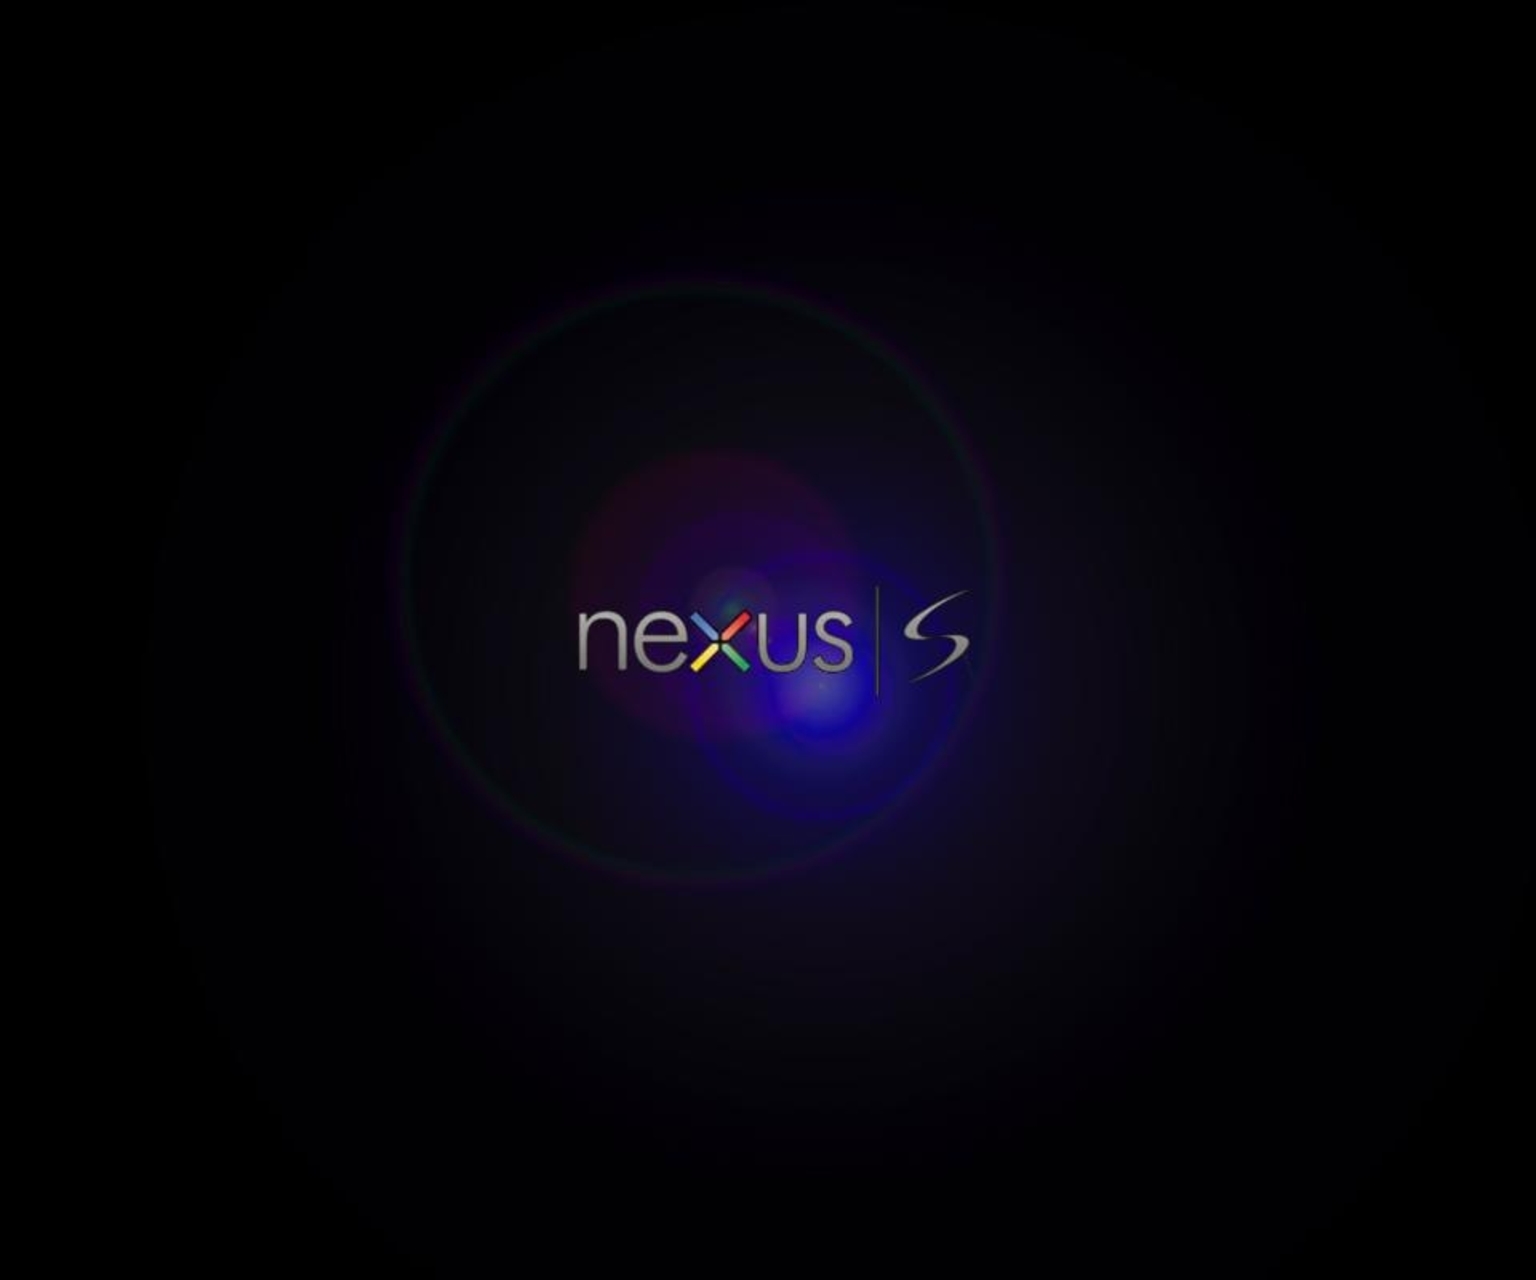 [41+] 3D Nexus Wallpaper - WallpaperSafari